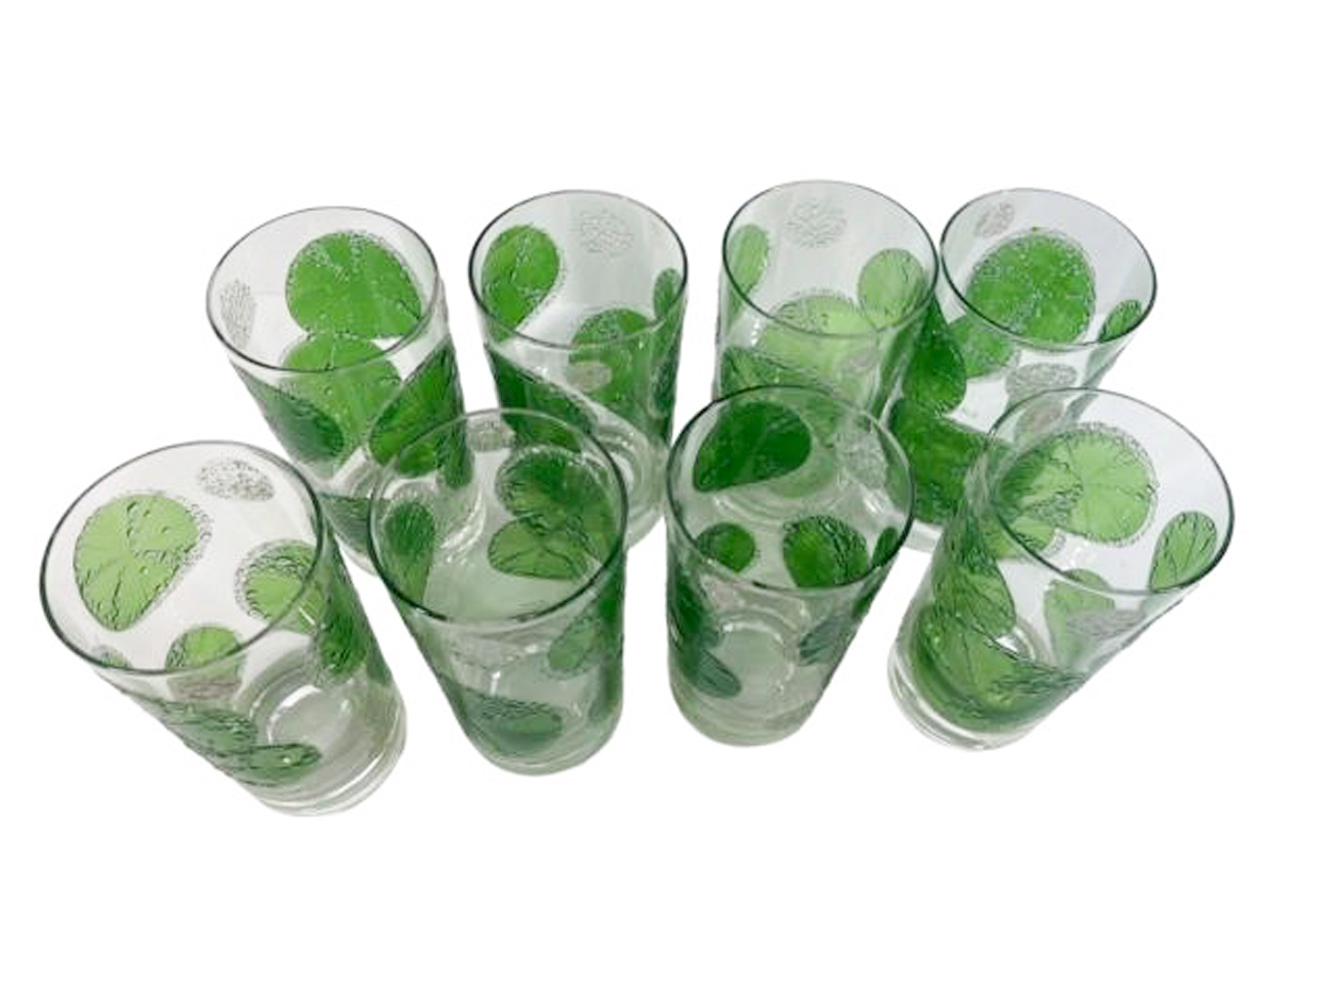 Vintage-Set aus 8 Gläsern von Fred Press mit durchscheinenden grünen Limettenscheiben, die mit erhabenen Perlen mit klaren, gefrosteten Rändern verziert sind, die an Wasserperlen und Seifenblasen erinnern, zusammen mit einem rechteckigen Behälter